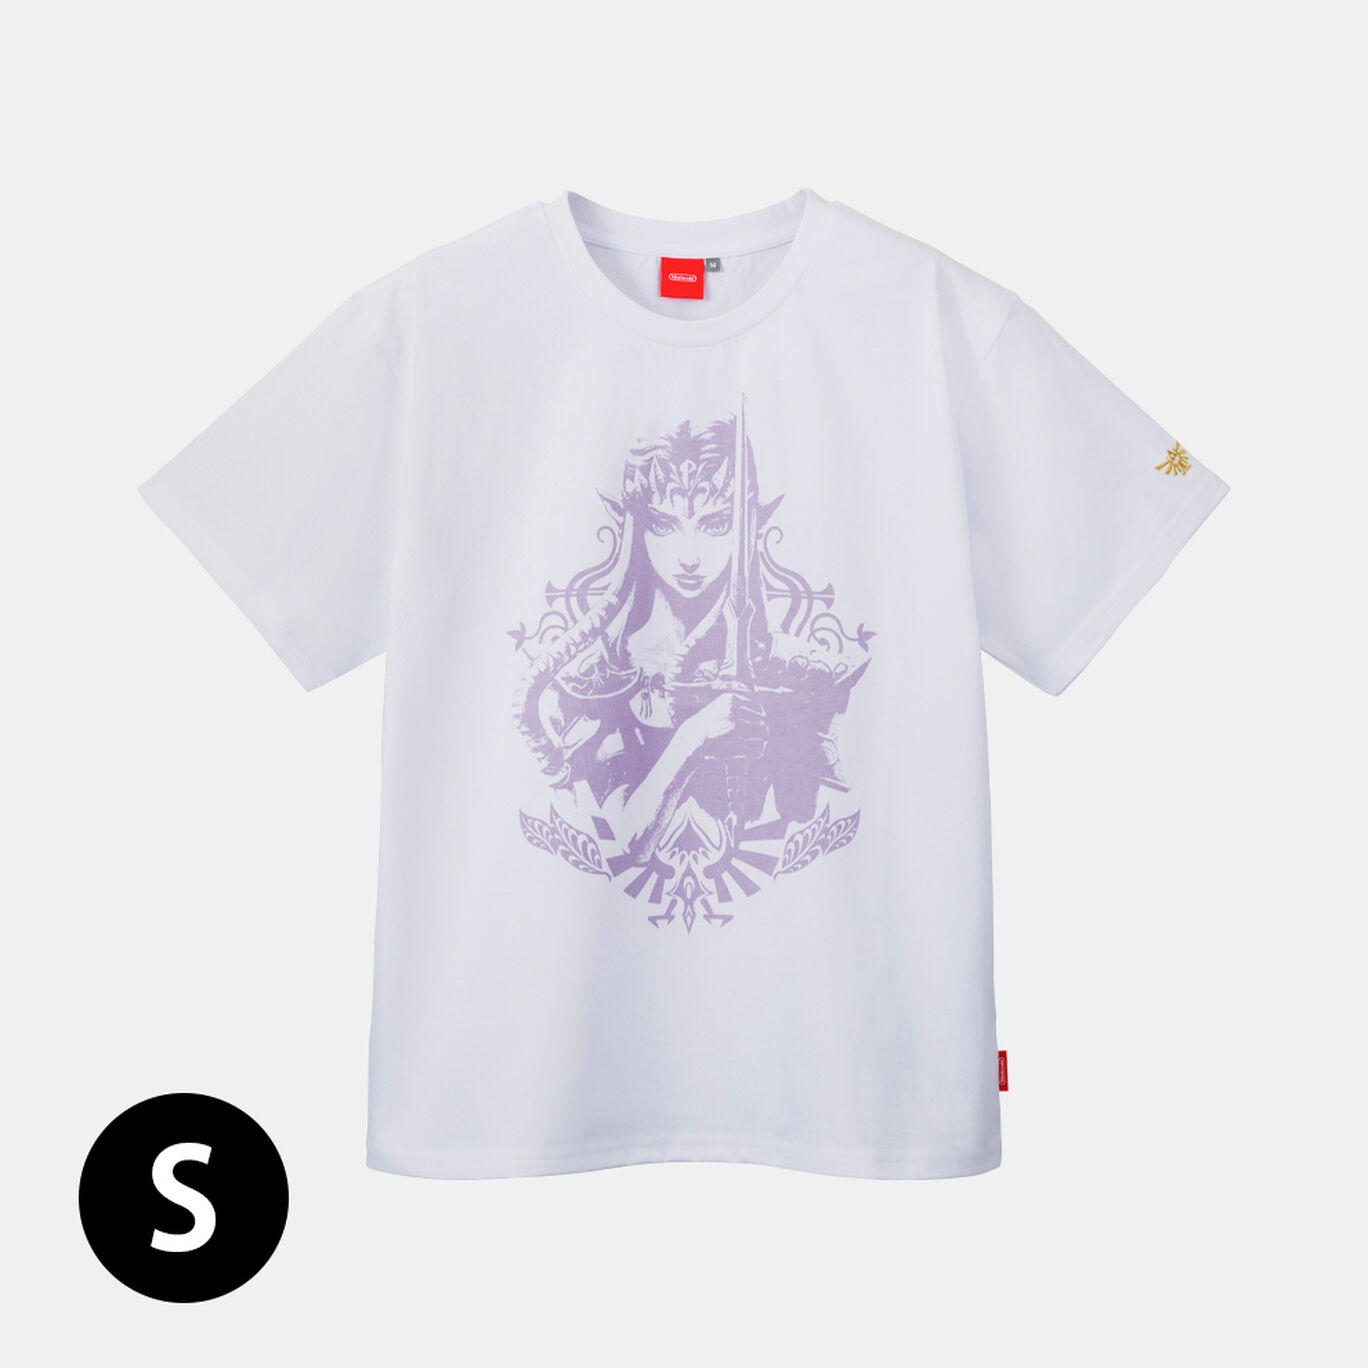 Tシャツ トライフォース ゼルダ S ゼルダの伝説【Nintendo TOKYO取り扱い商品】